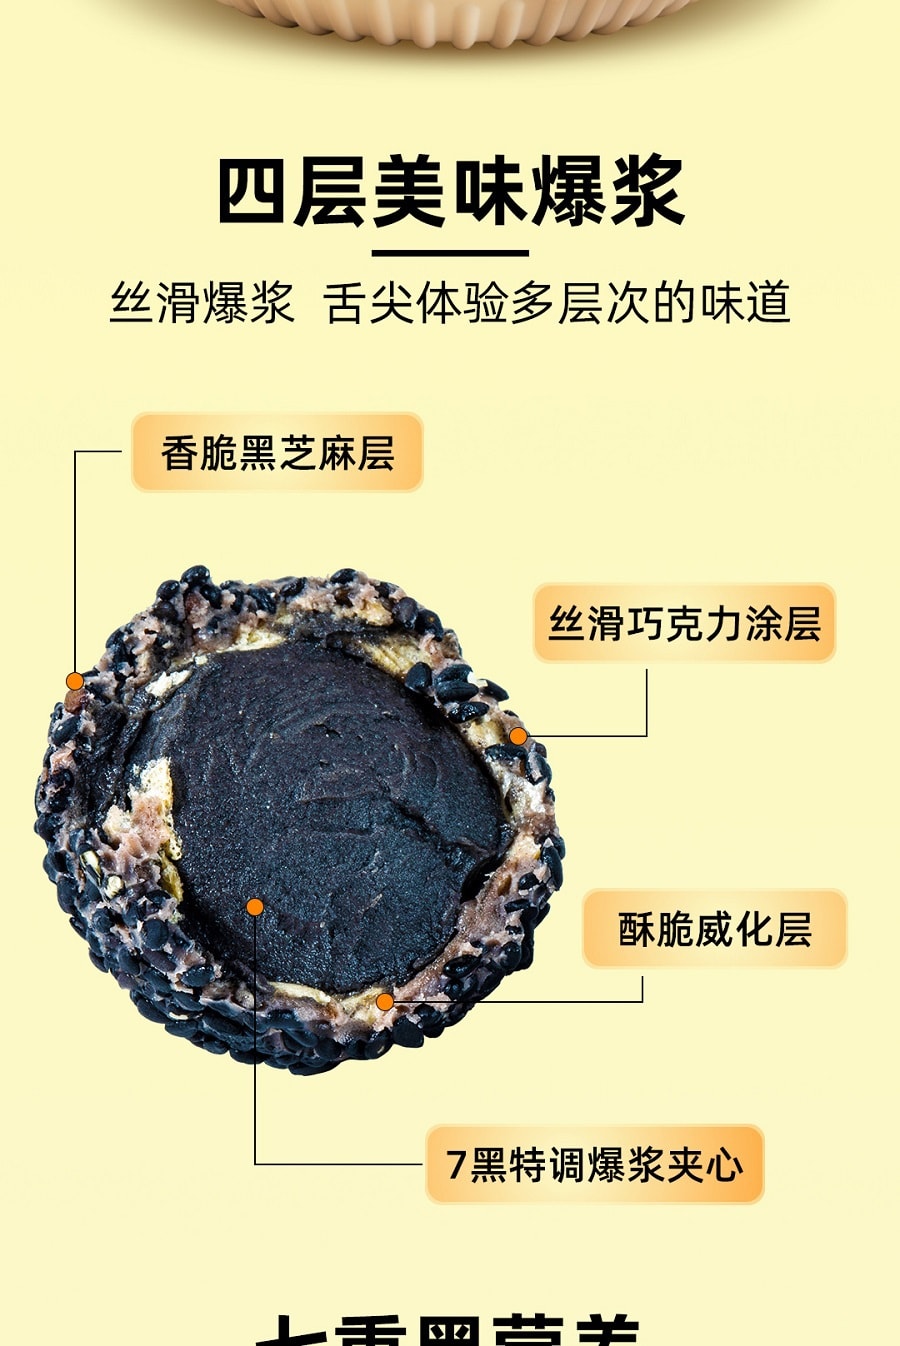 中国 好牌 健康零食 零蔗糖 五黑可可 爆浆黑芝麻丸 80克 酥脆夹心 配方升级为纯可可粉并添加七重黑营养